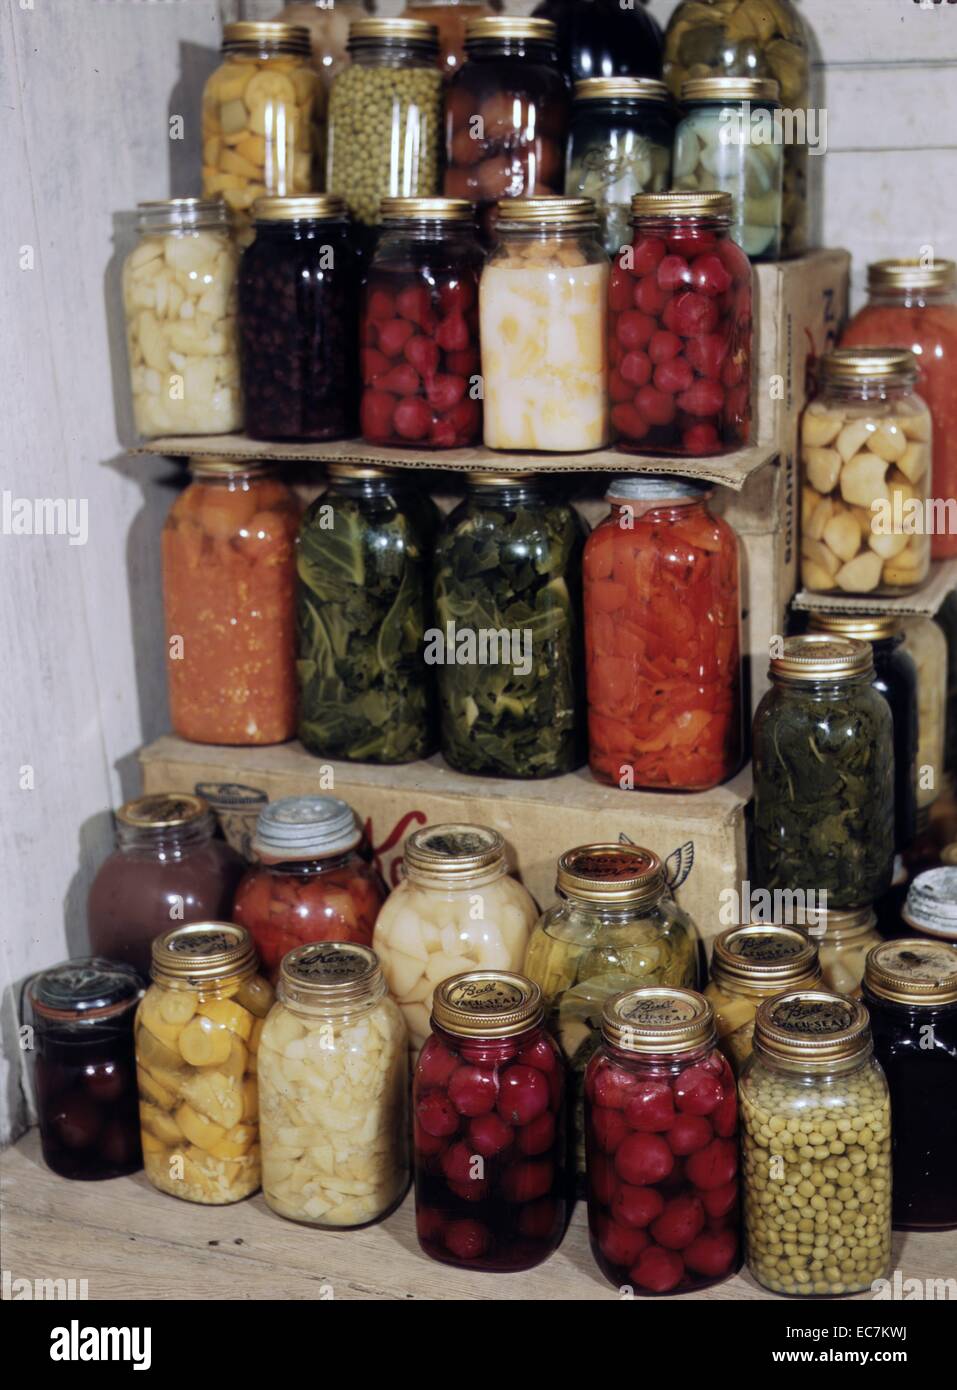 Visualizzazione della home-conserve alimentari mostra fotografica di vasetti di zucca gialla, piselli, barbabietole, e altri ortaggi. Foto Stock